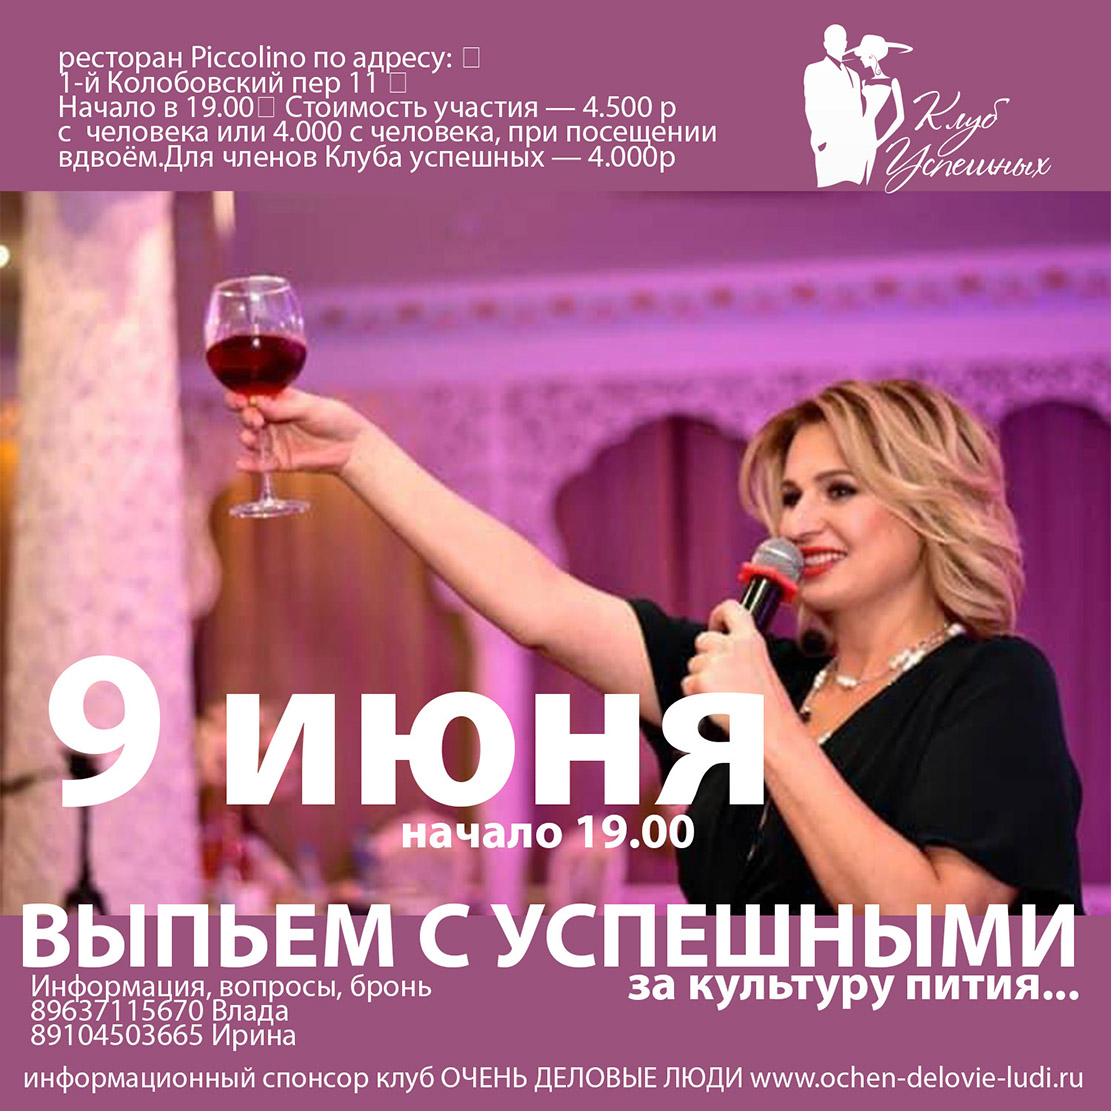 В среду, 9 июня в 19-00 — приглашаем вас на мастер класс с дегустацией вина в Клубе успешных «Викторина знаний».⠀